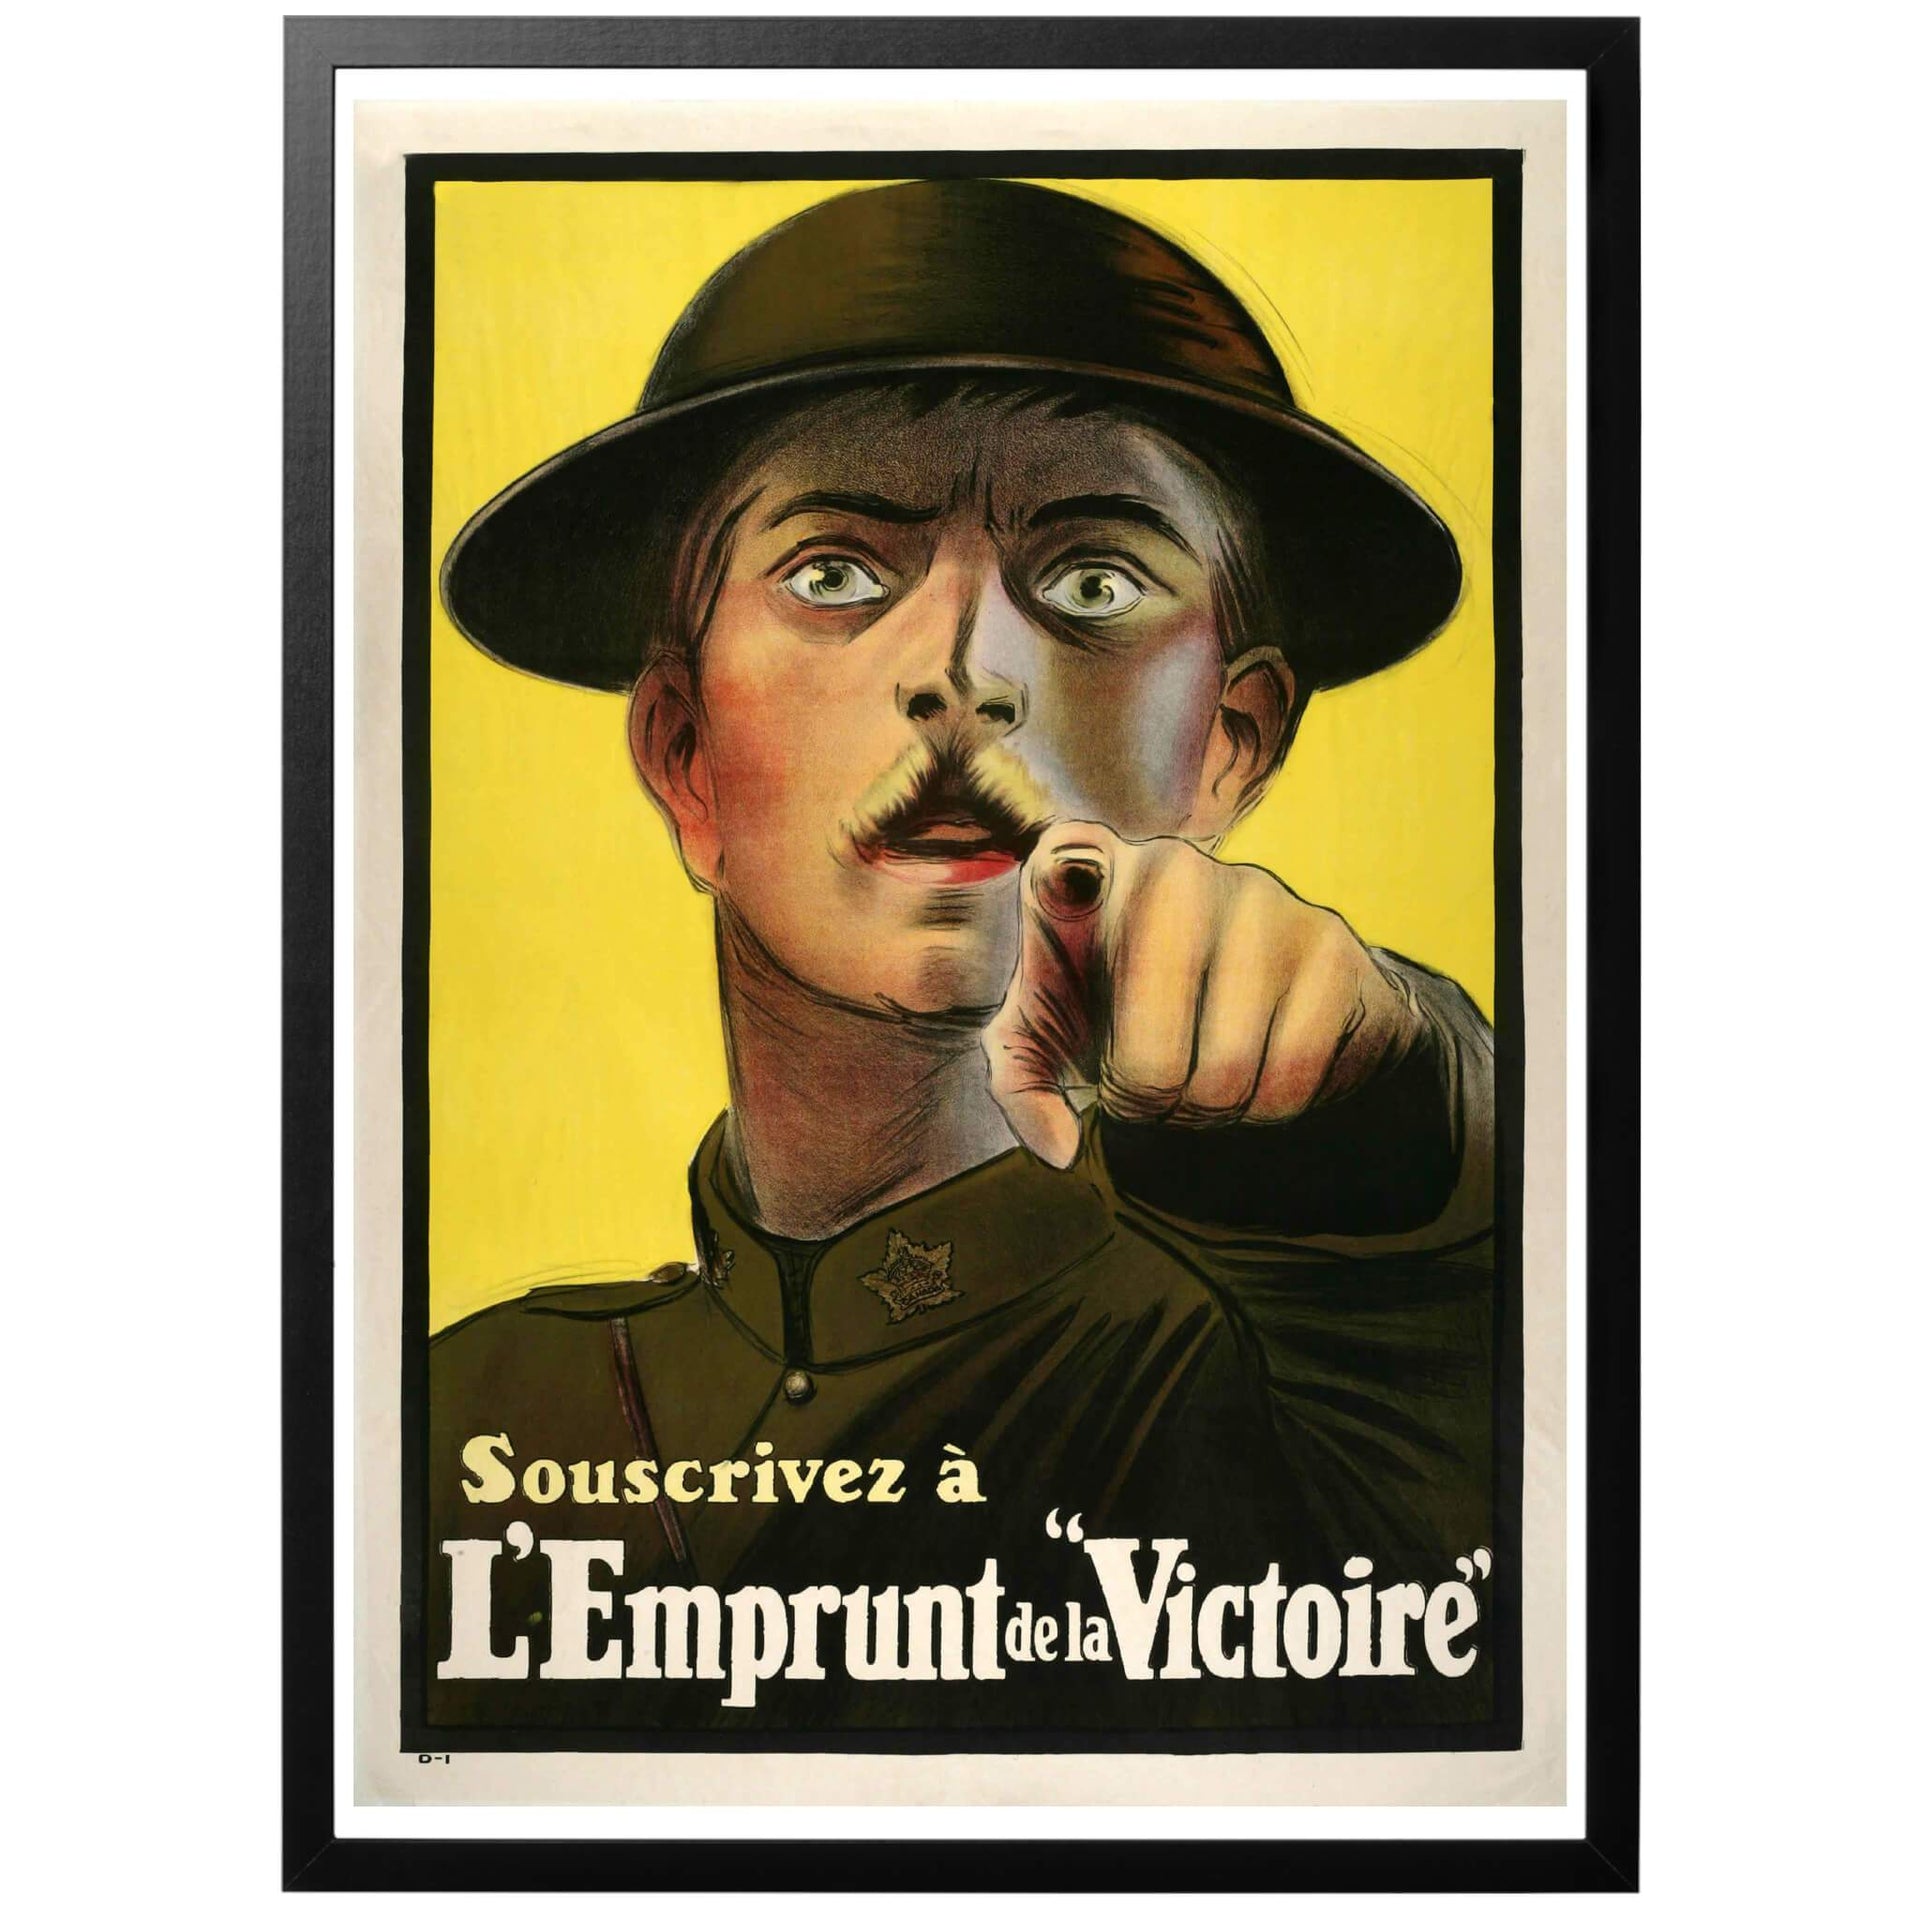 Souscrivez à L'emprunt de la Victoire -Prenumerera på segerlånet -  En kanadensisk franskspråkig poster från 1916 där det uppmanas till köp av krigsobligationer. Postern använder sig av det populära temat med att en man pekar åt betraktaren som då ska känna sig träffad. Köp den hos World War Era!